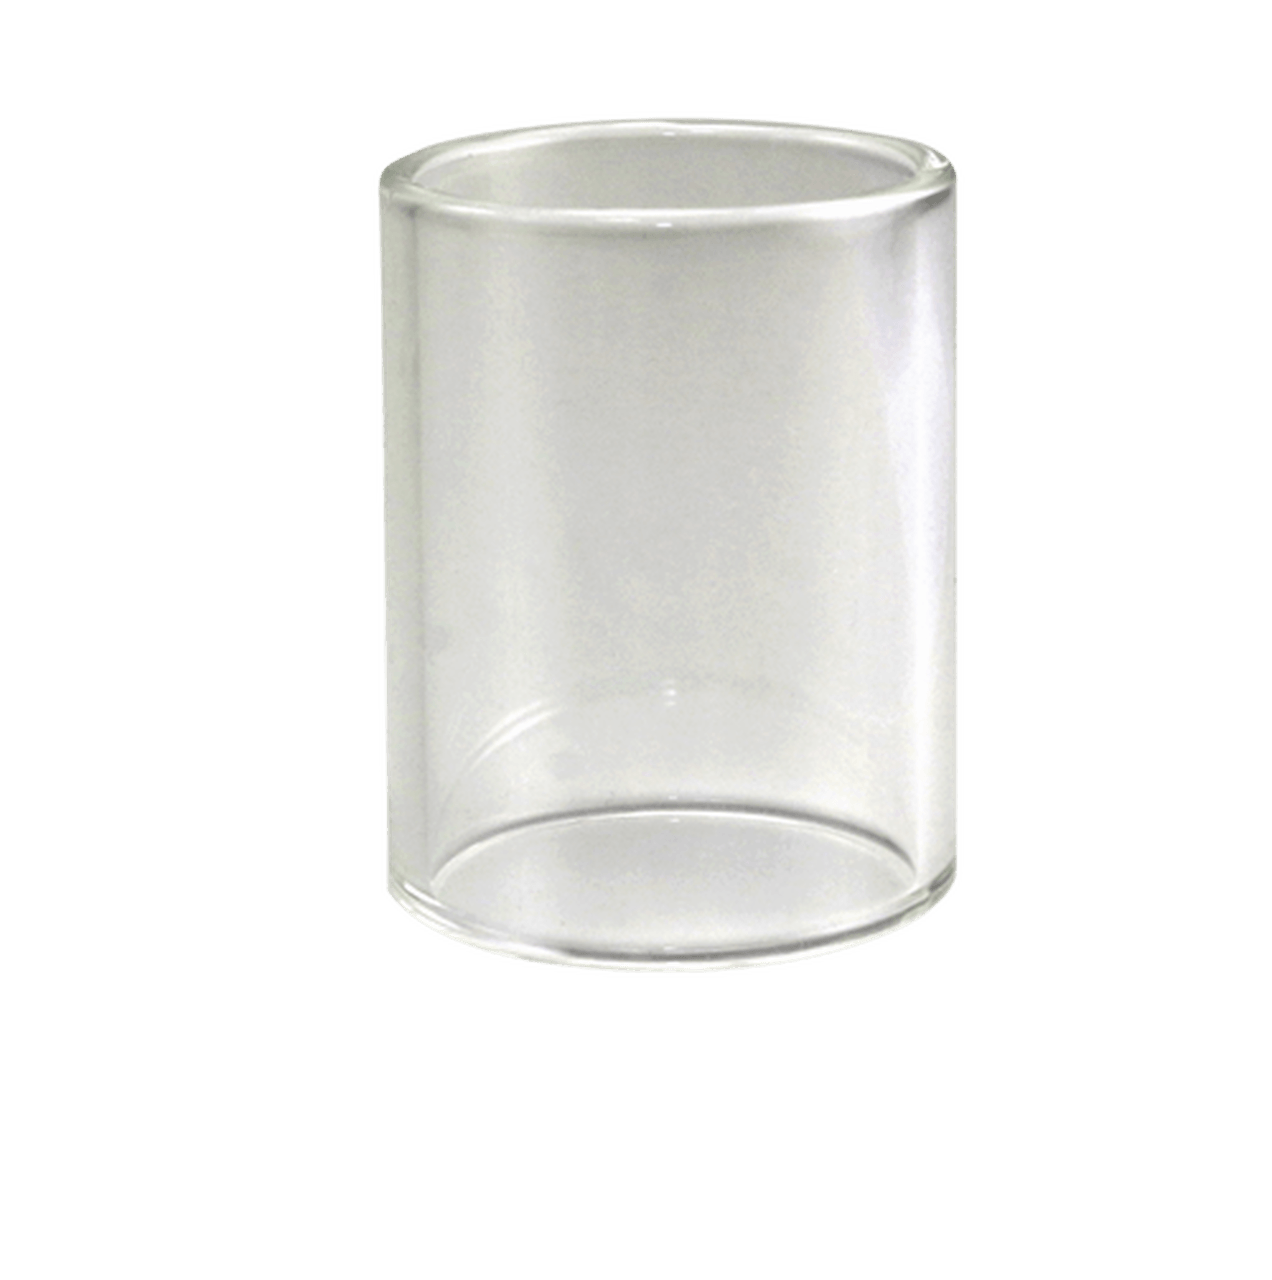 Aspire Cleito Glass Tube 3.5ml - Vaper Aid